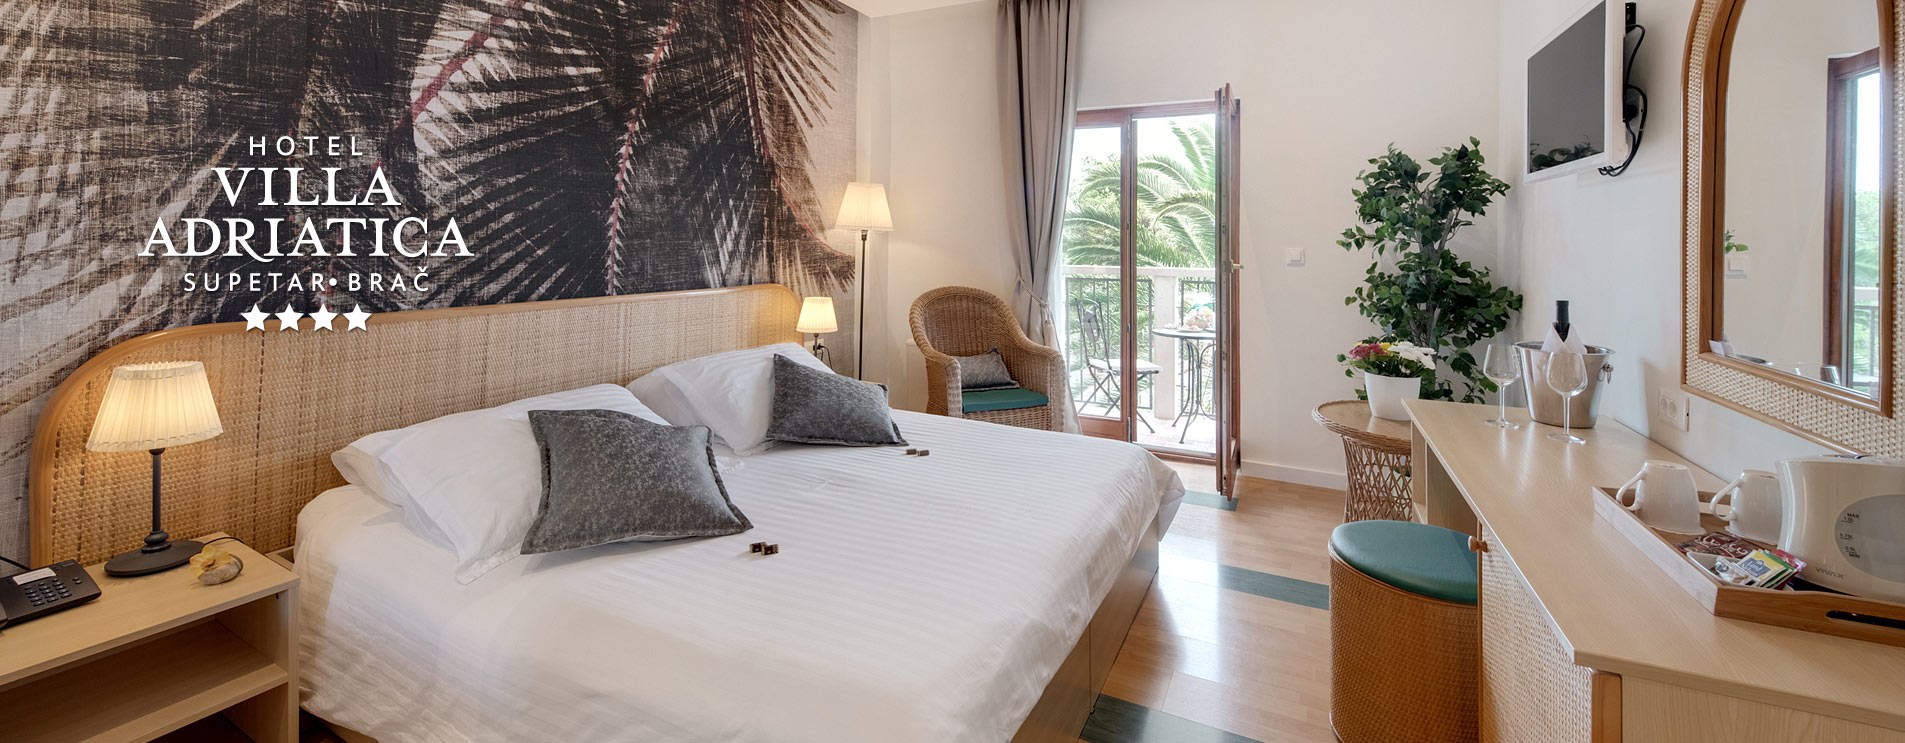 Hotel Villa Adriatica, Accommodation